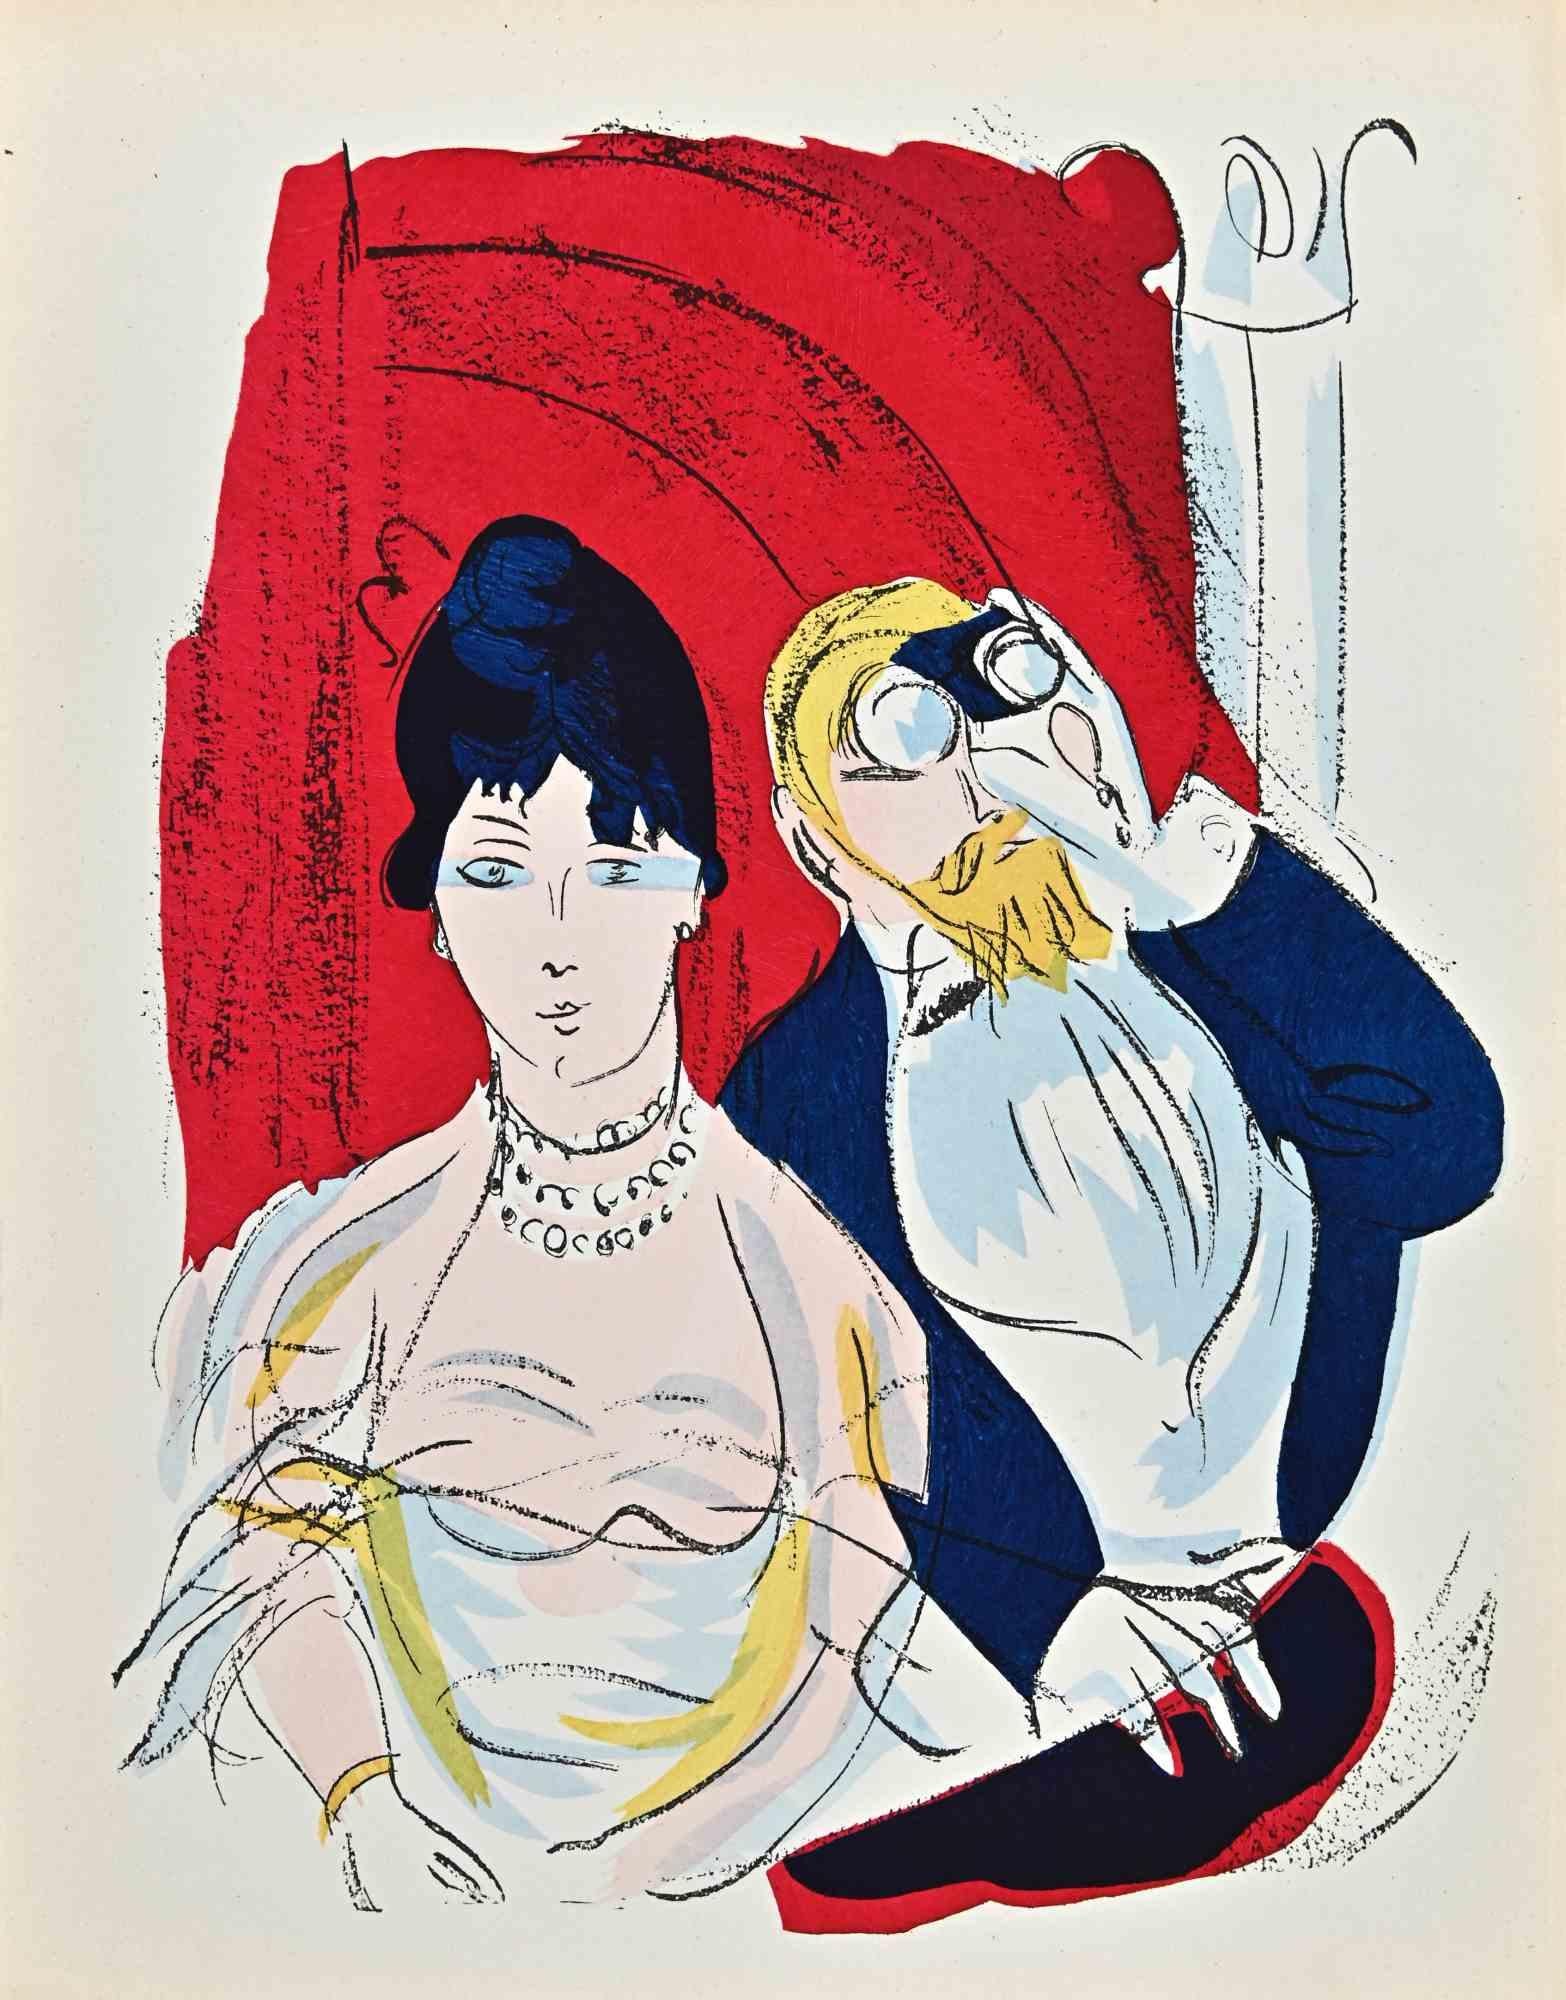 Theater ist eine Lithographie von Raoul Dufy aus dem Jahr 1920.

Gute Bedingungen.

Auflage von 110 Stück.

Das Kunstwerk wird mit sicheren Strichen in einer ausgewogenen Komposition dargestellt.